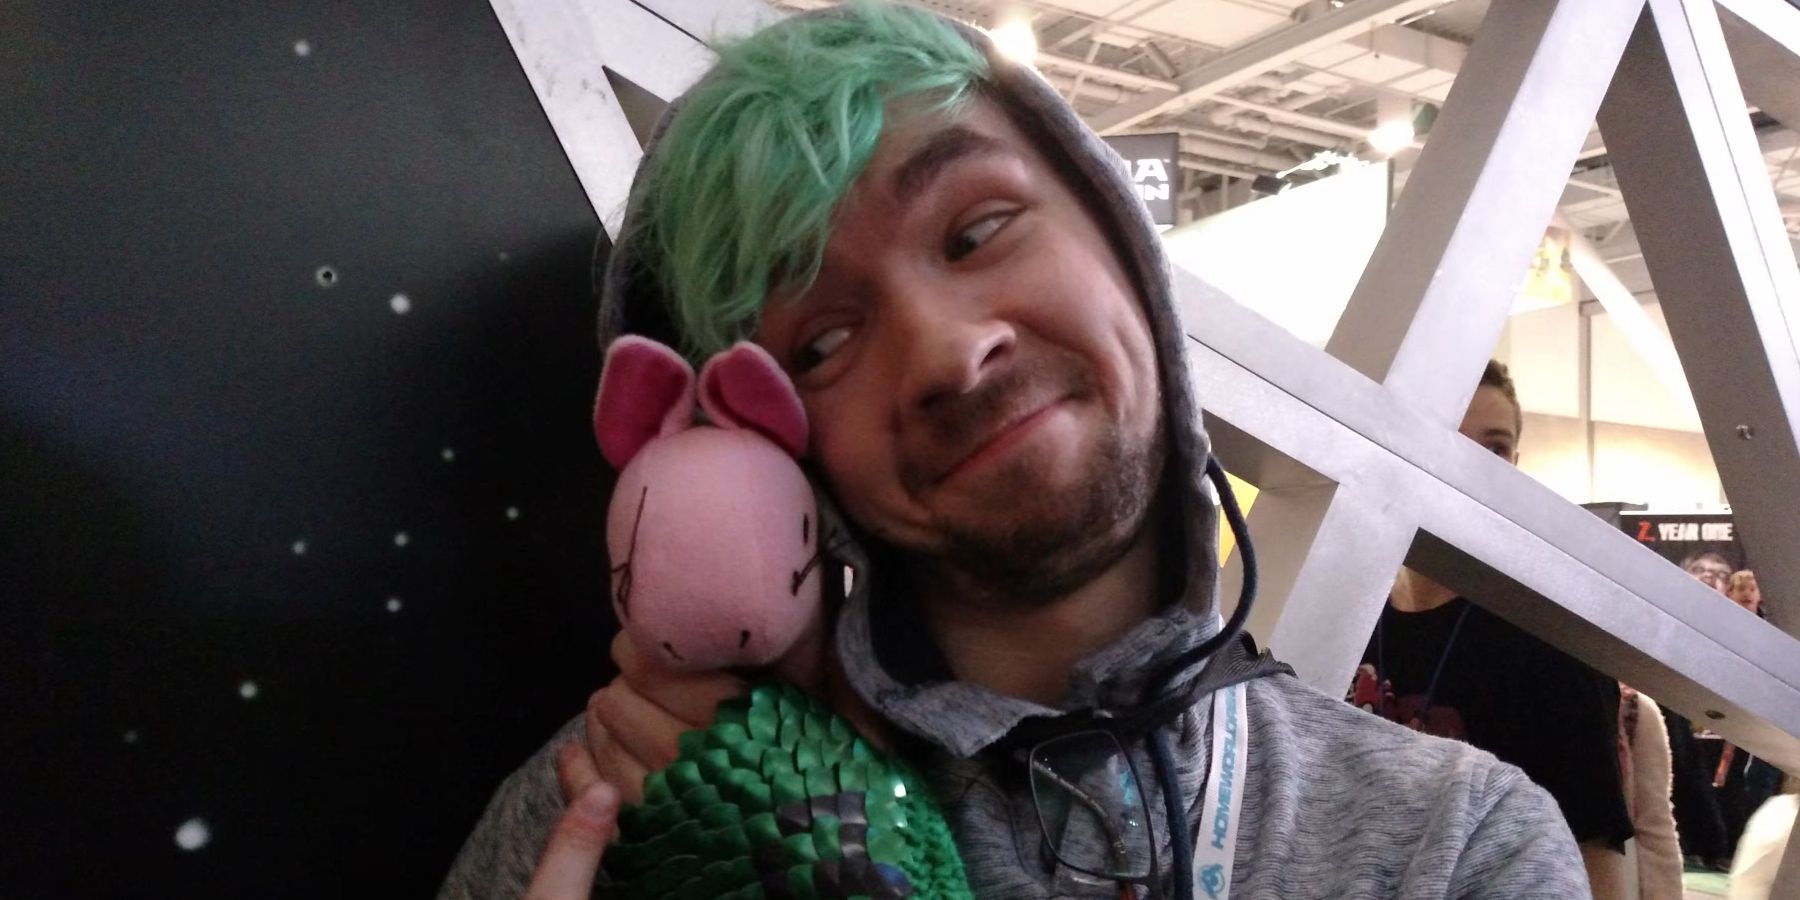 Gamer and YouTuber Jacksepticeye cuddling a cute mascot.